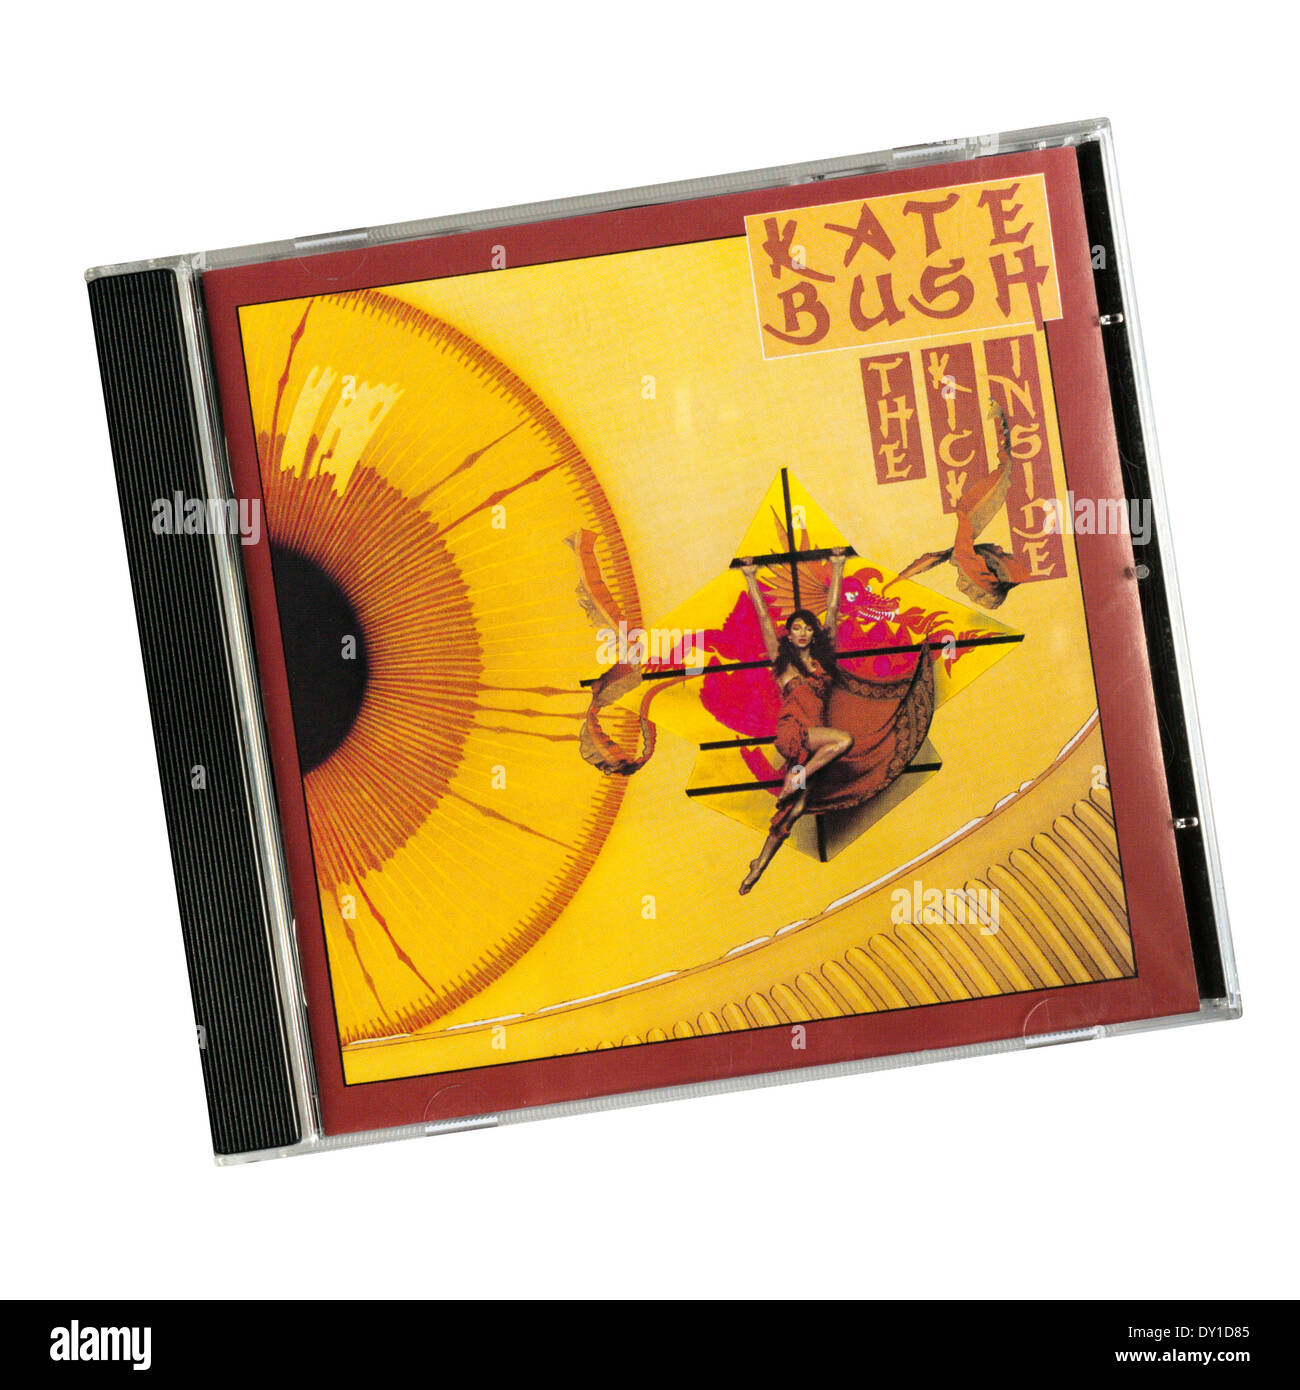 La Patada interior era el álbum debut en inglés de la cantante y músico Kate Bush. Fue lanzado en 1978. Foto de stock